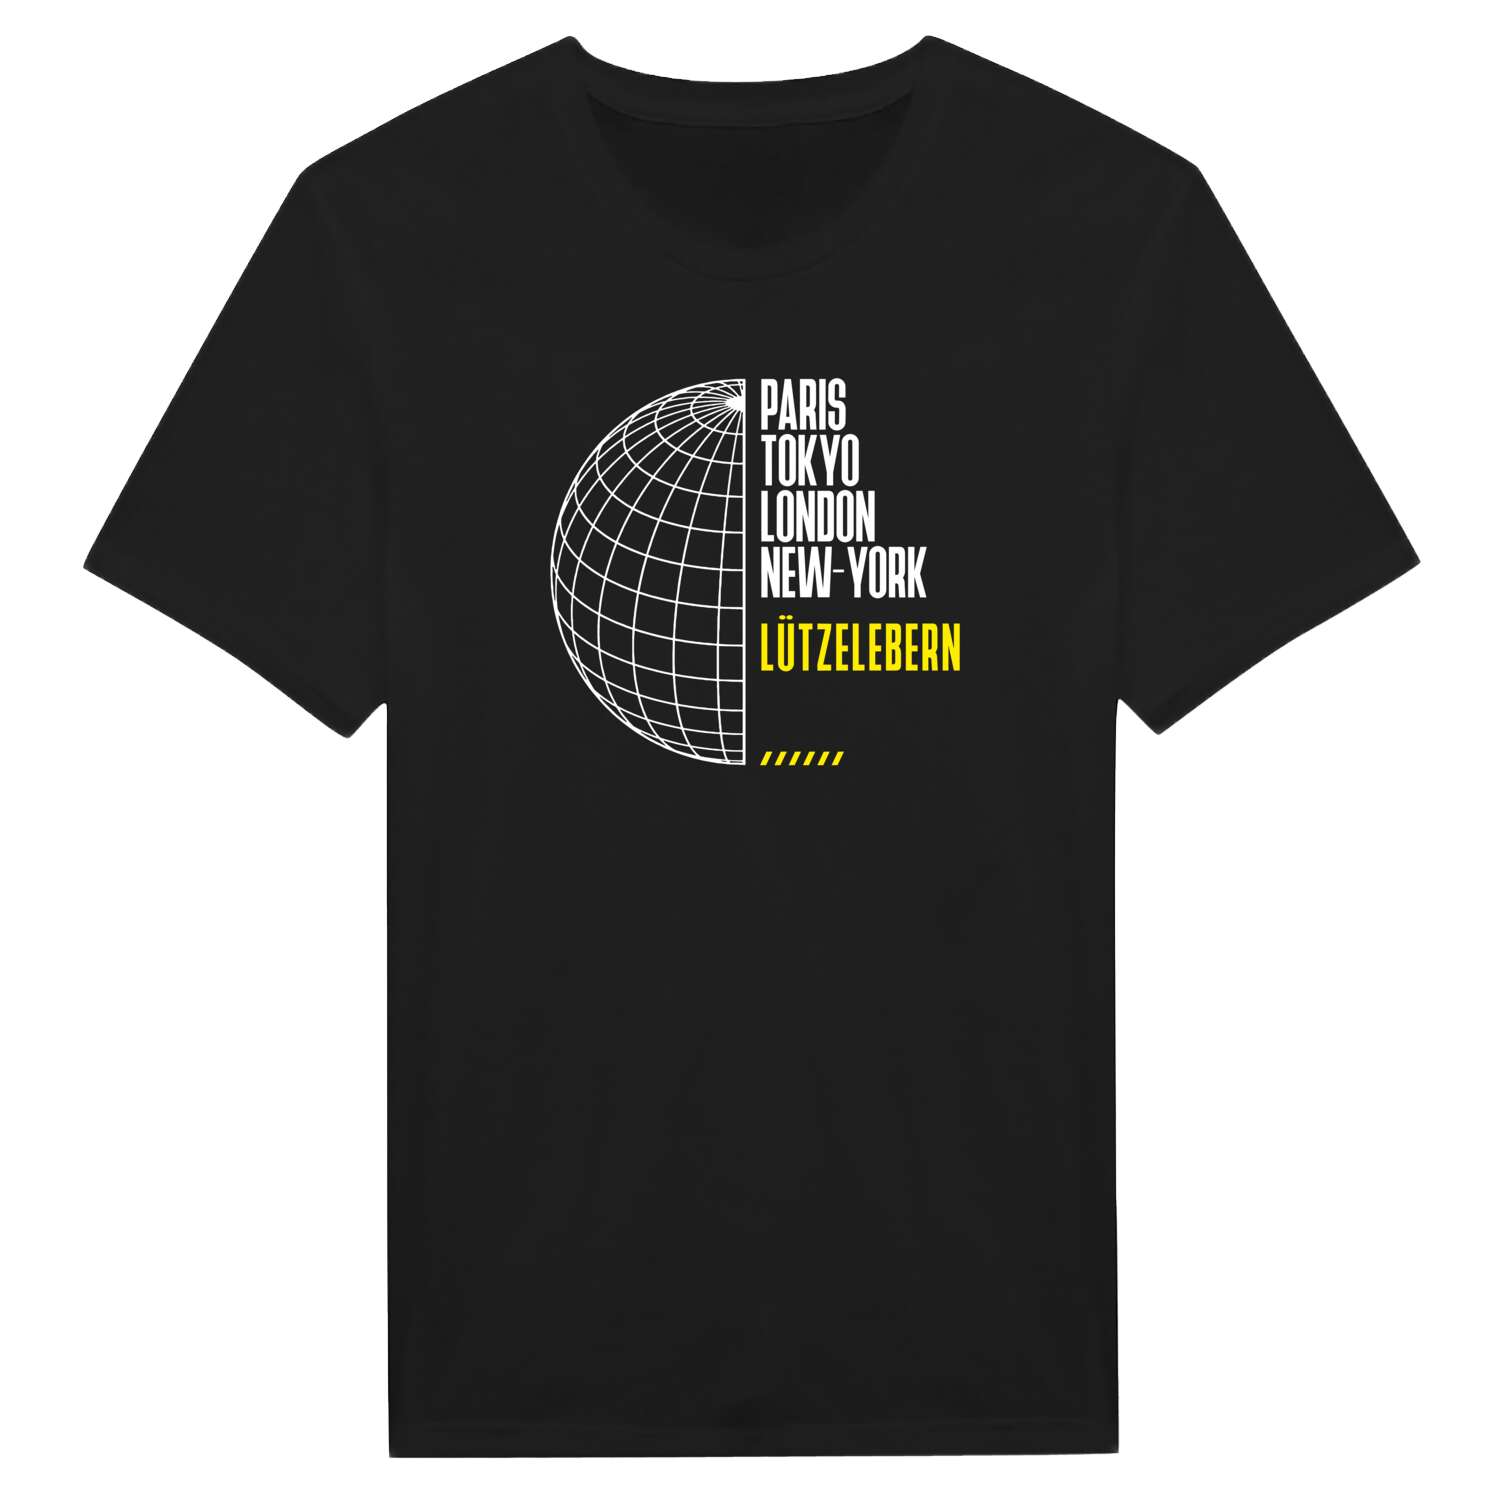 Lützelebern T-Shirt »Paris Tokyo London«